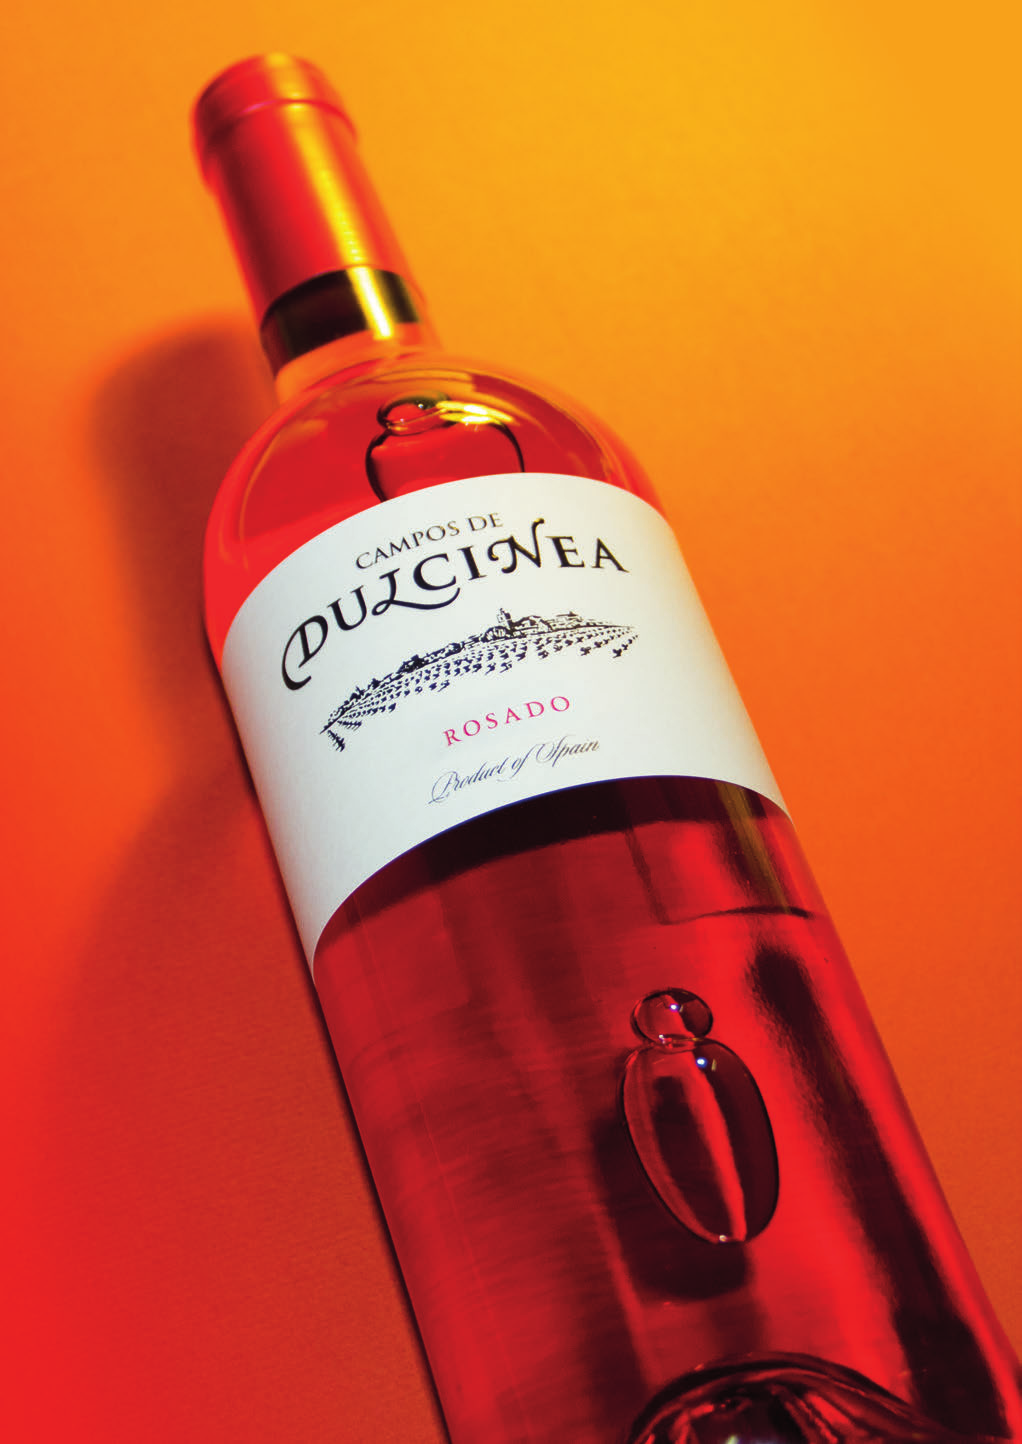 ROSADO El vino Rosado Campos de Dulcinea es un vino alegre en la boca.